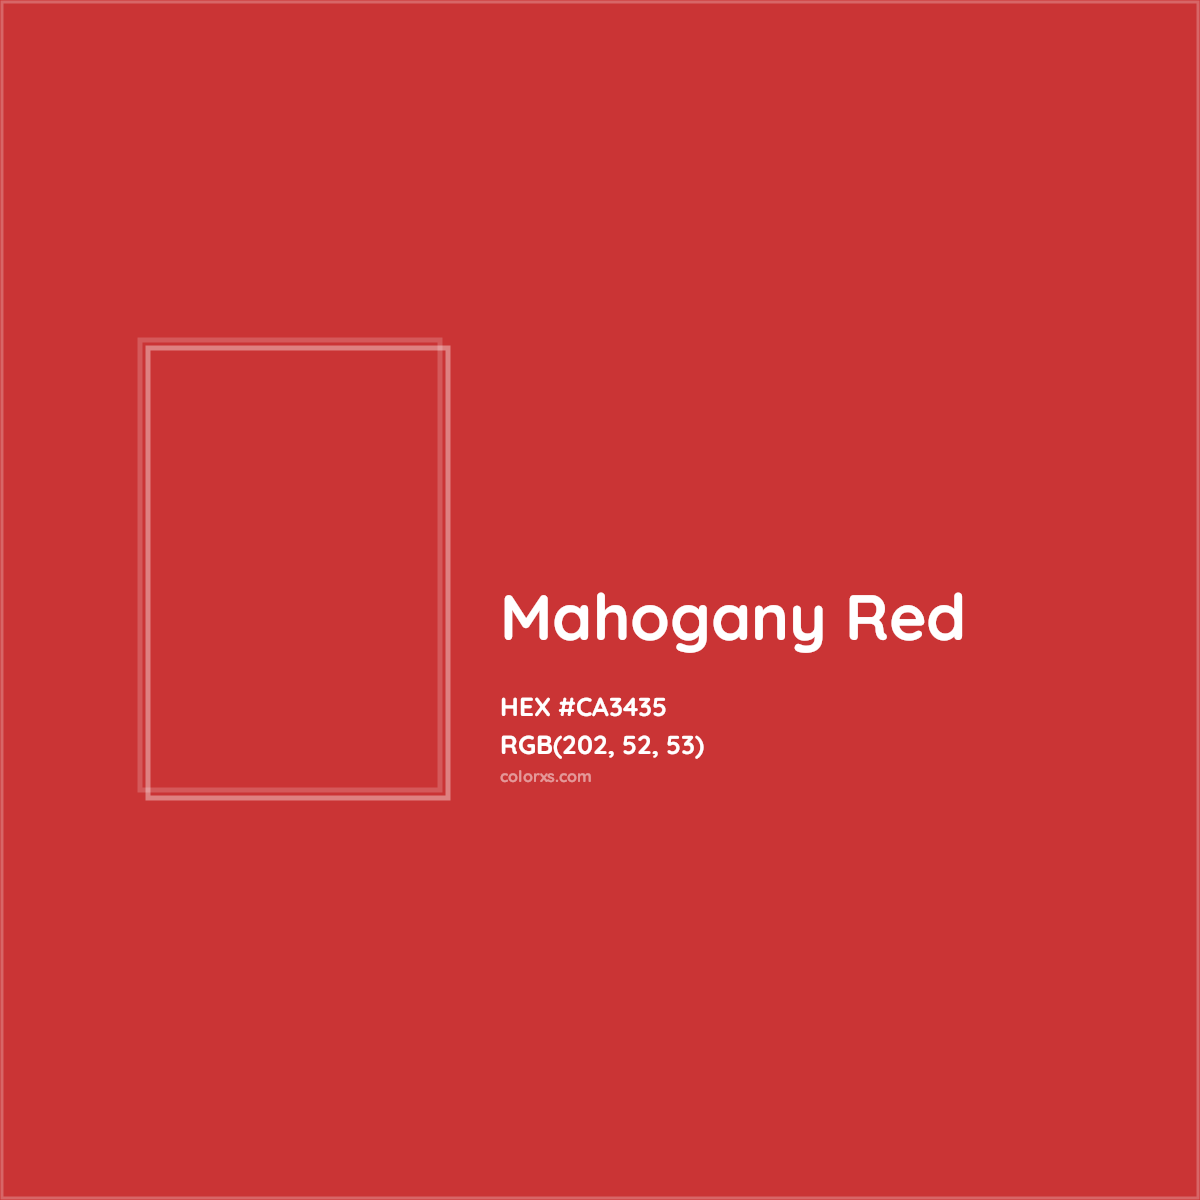 HEX #CA3435 Mahogany Red Color Crayola Crayons - Color Code